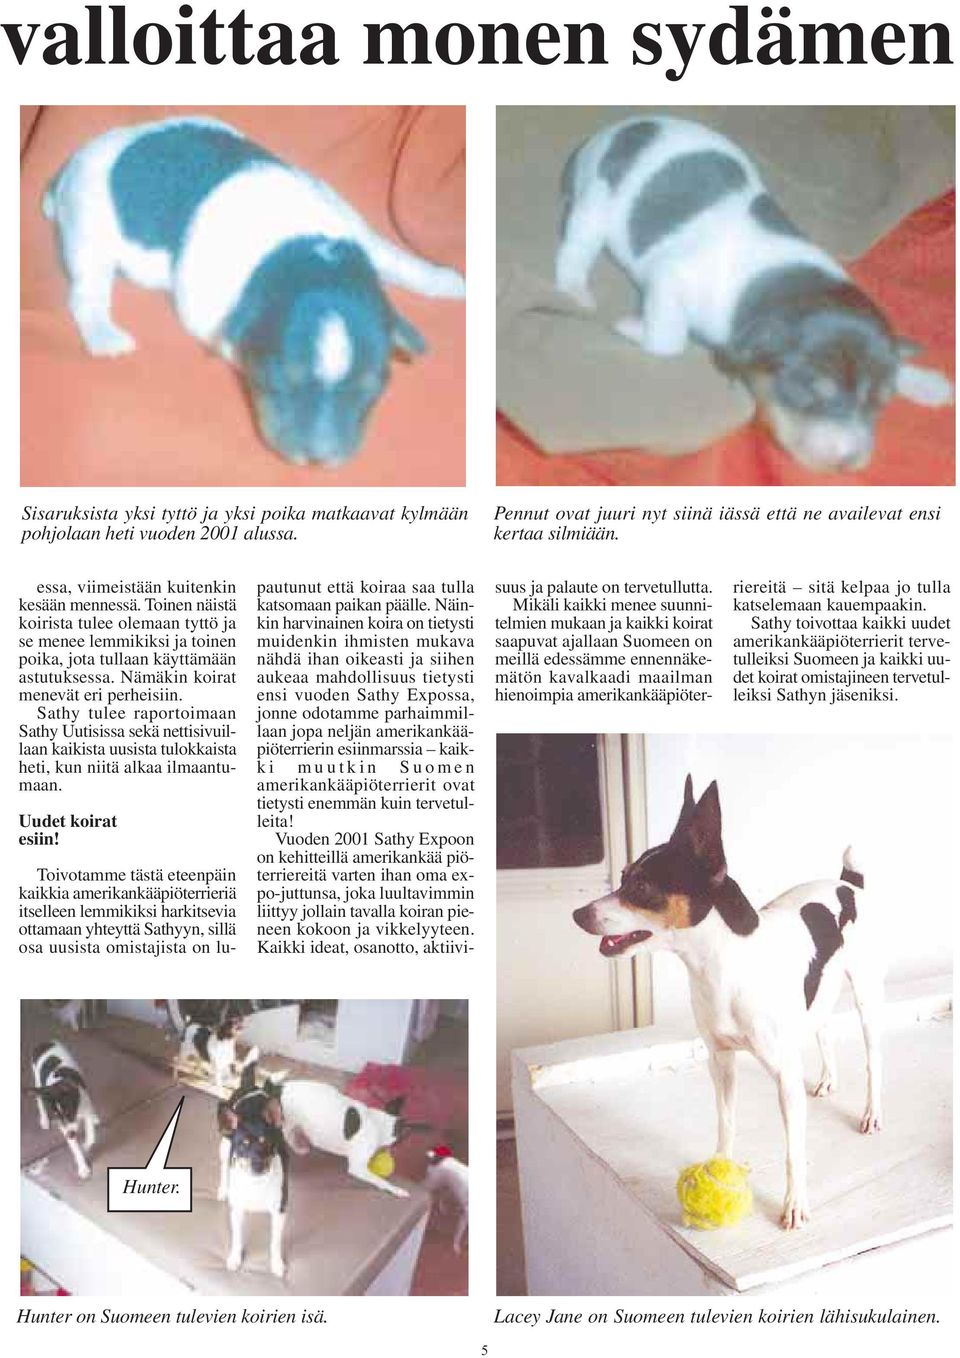 Nämäkin koirat menevät eri perheisiin. Sathy tulee raportoimaan Sathy Uutisissa sekä nettisivuillaan kaikista uusista tulokkaista heti, kun niitä alkaa ilmaantumaan. Uudet koirat esiin!